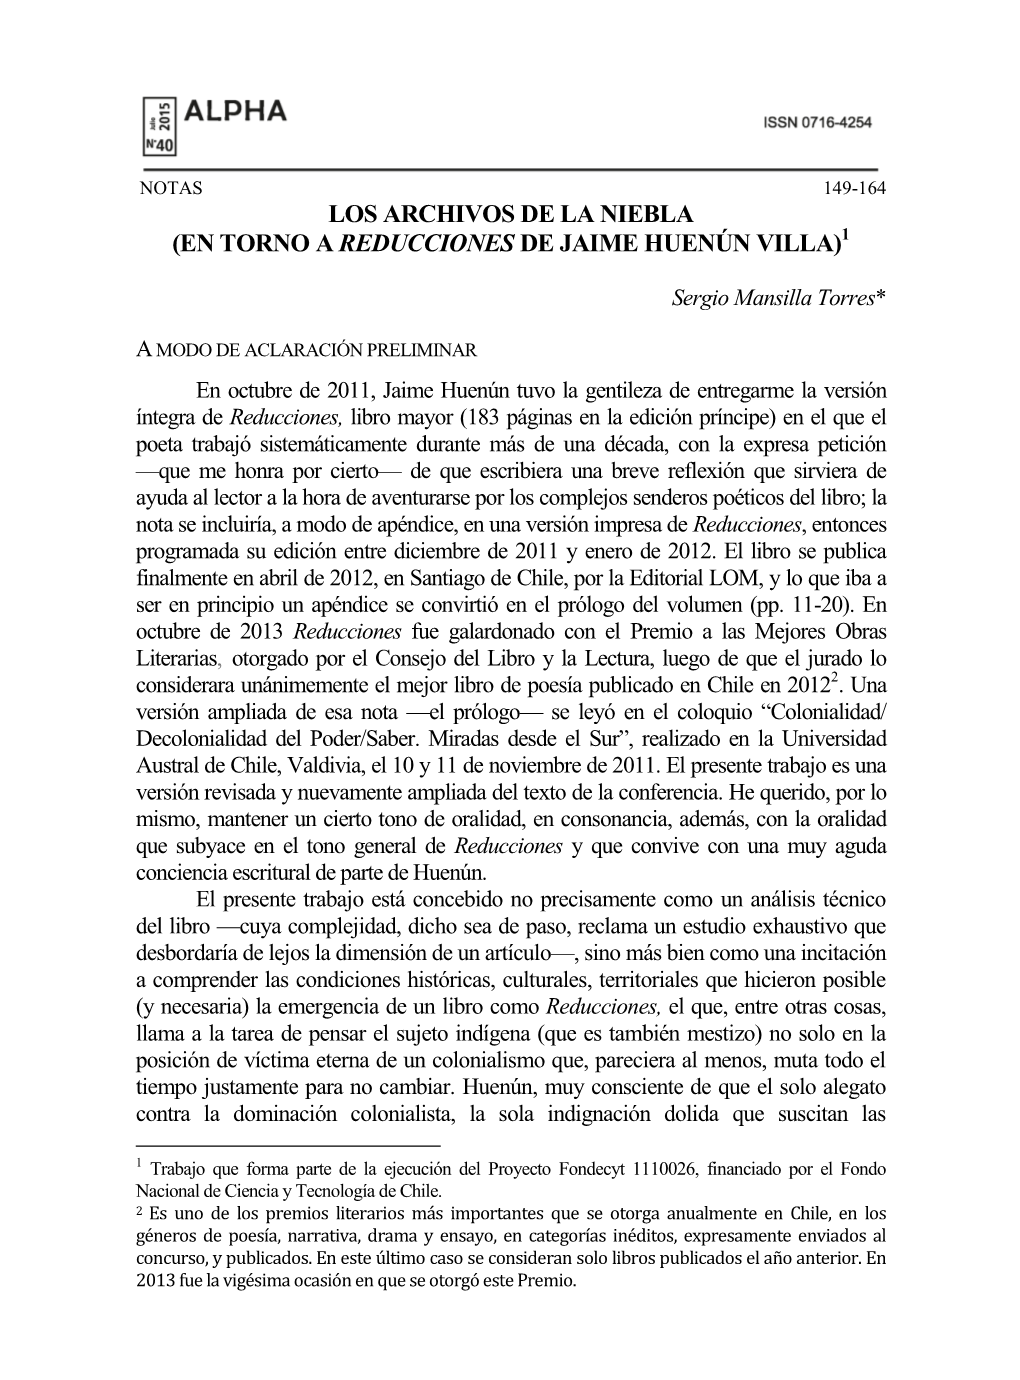 Los Archivos De La Niebla (En Torno a Reducciones De Jaime Huenún Villa)1